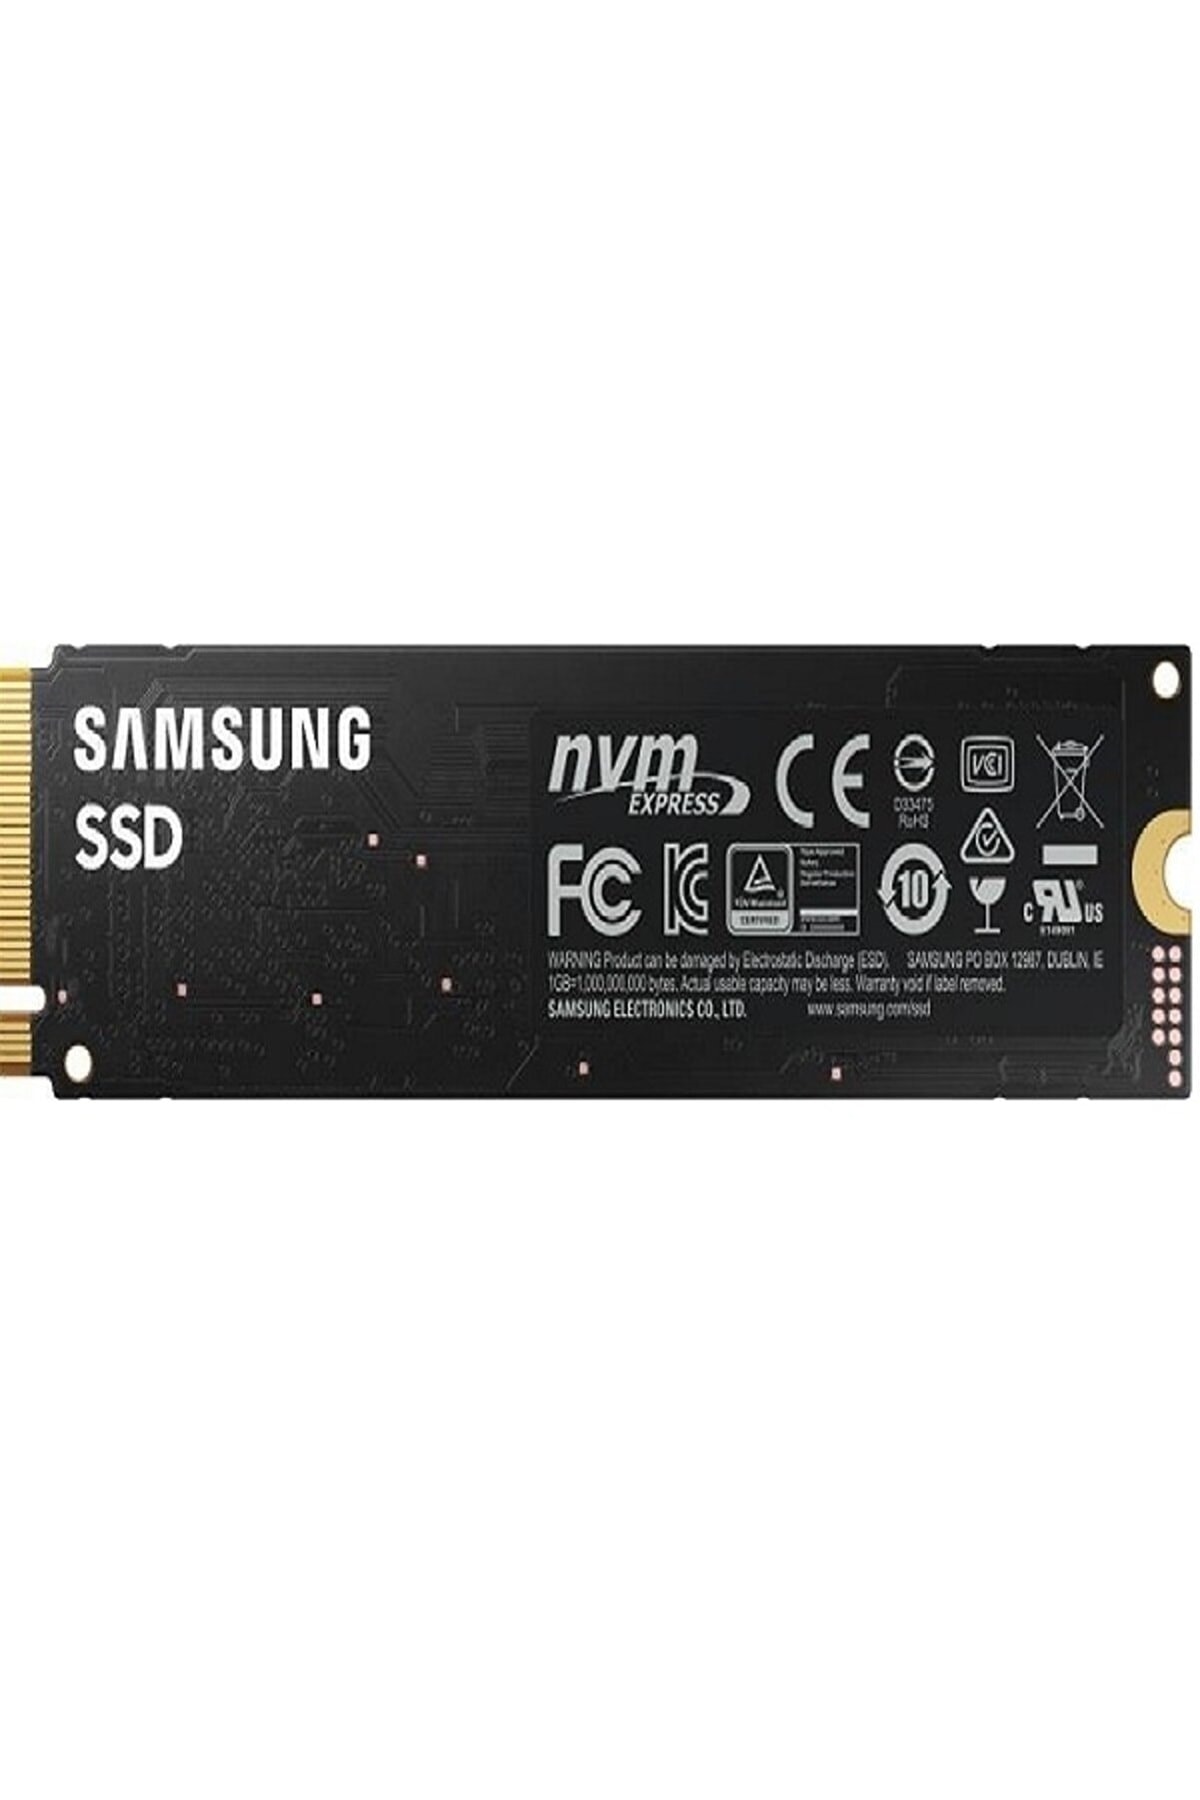 Samsung 980 EVO 1tb. Ssd 980 mz v8v1t0bw